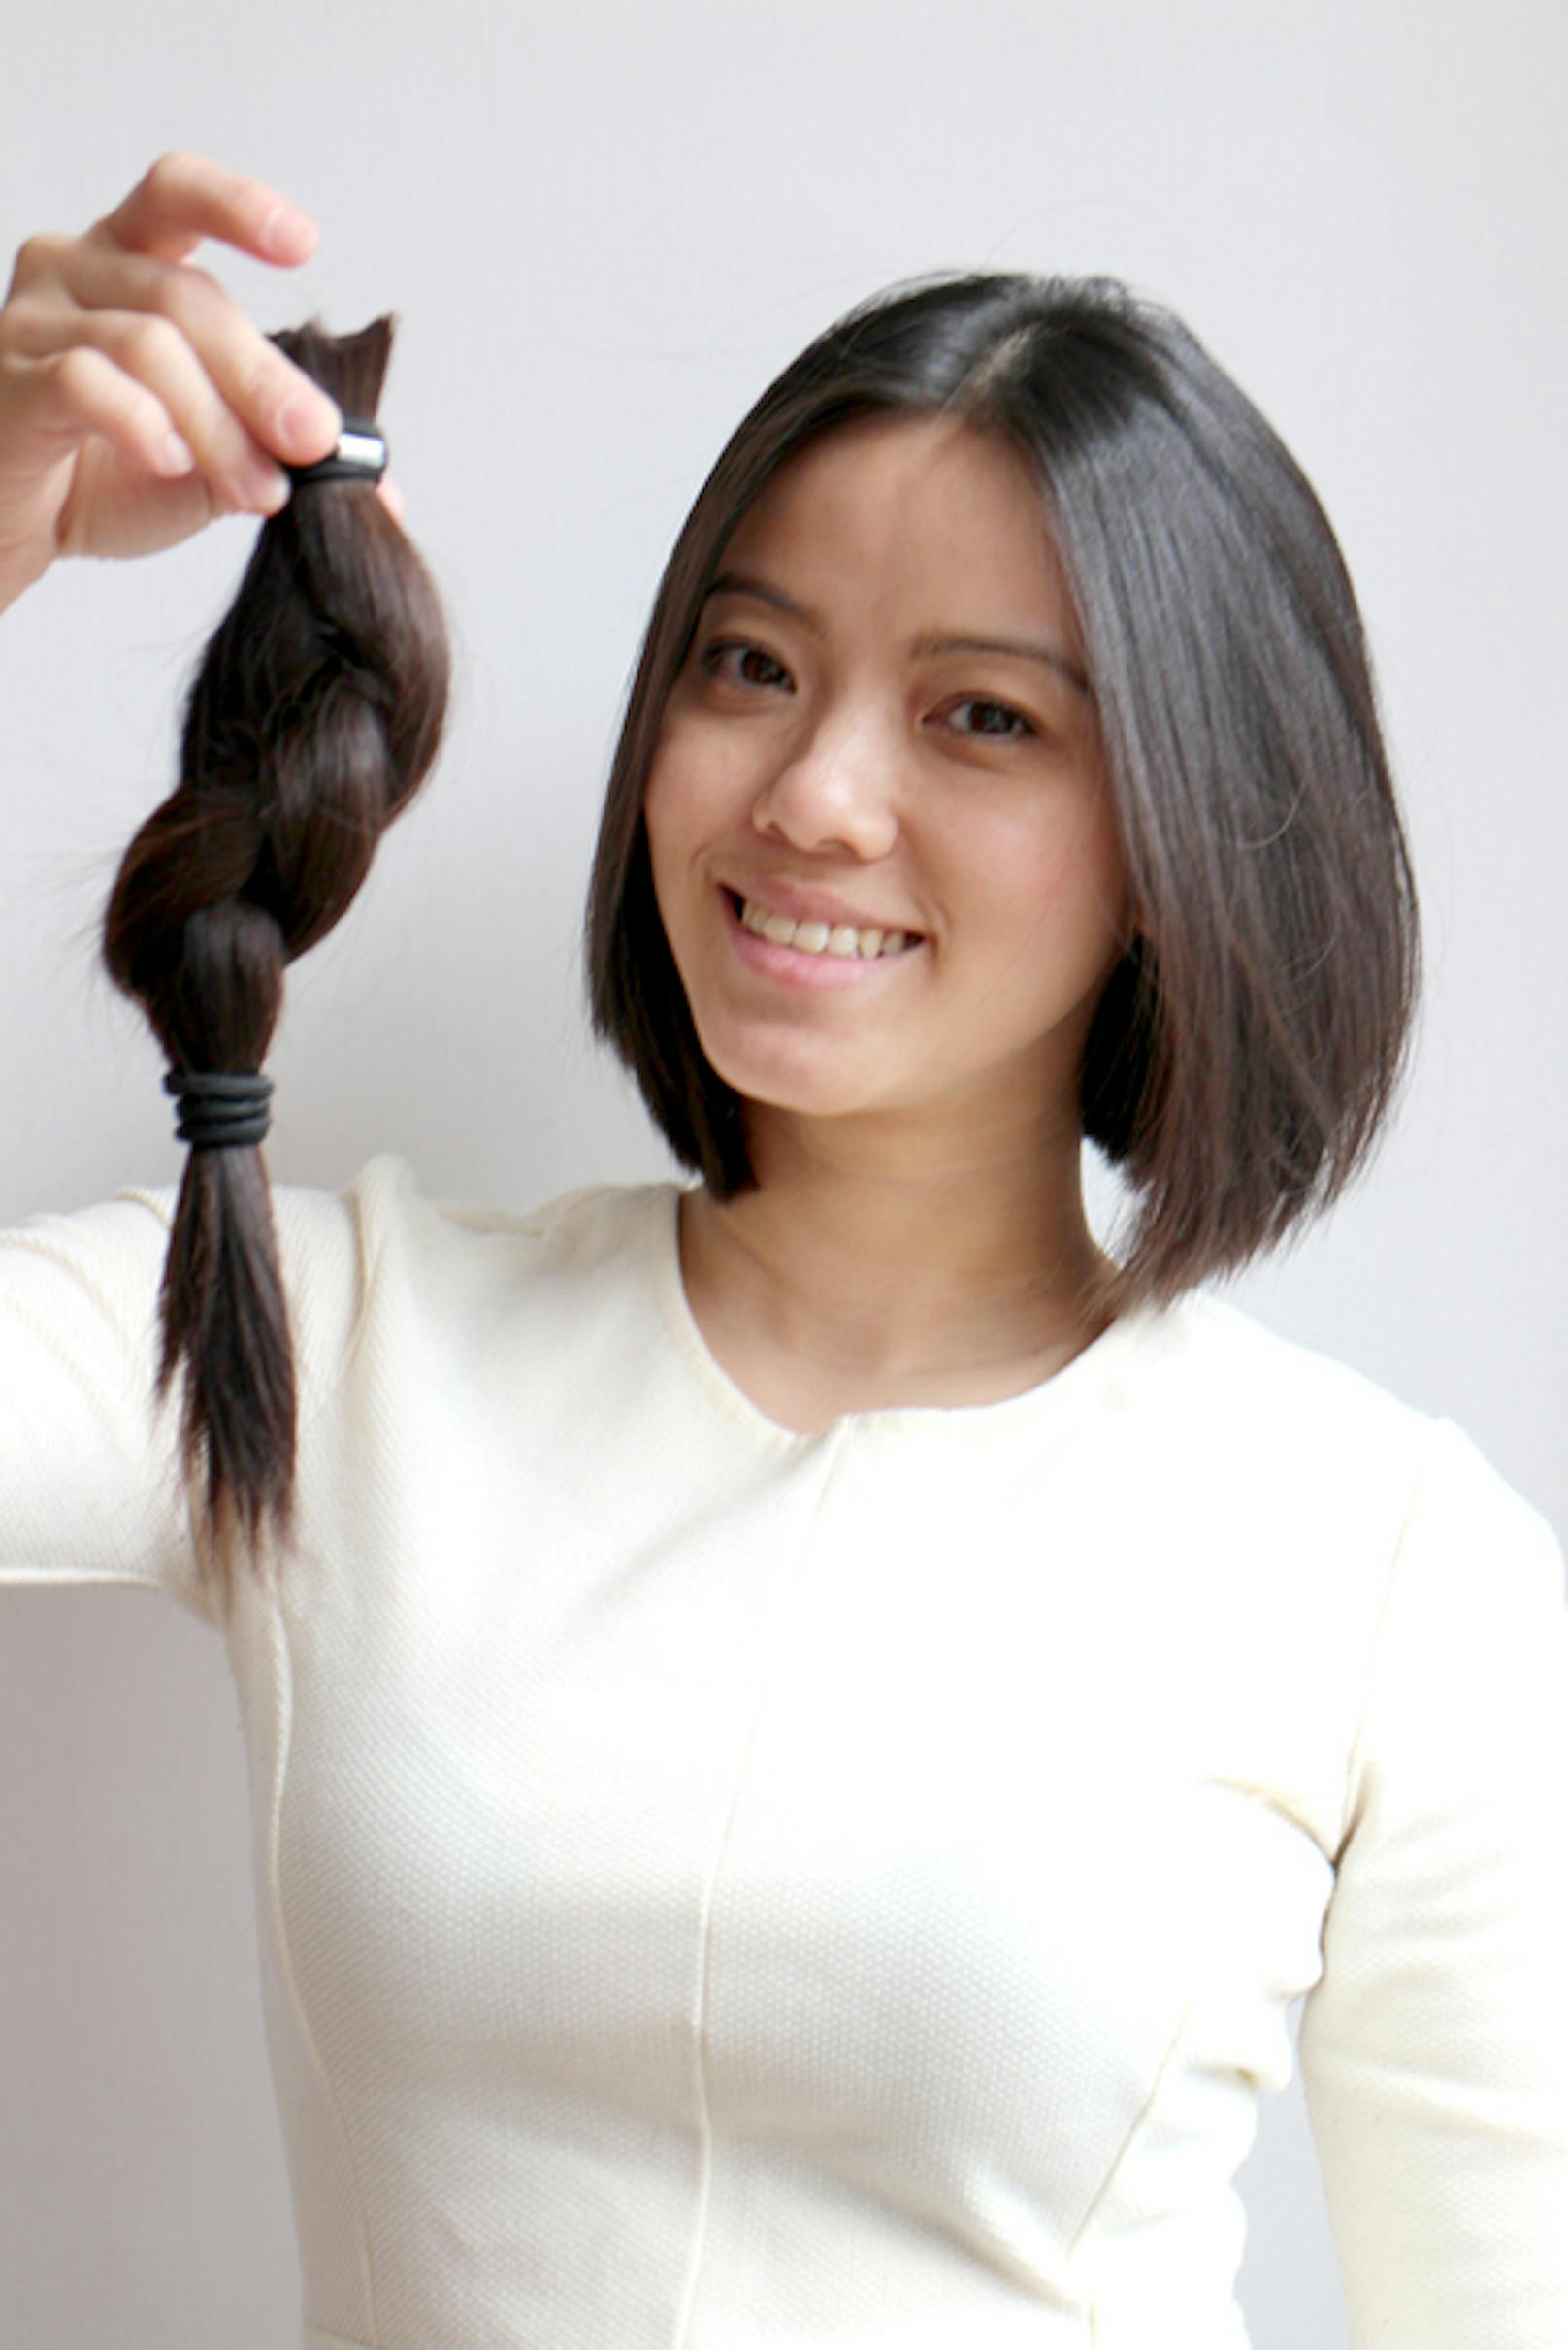 Wer sich von seiner langen Haarpracht verabschiedet, kann diese in eine Spende für kranke Kinder verwandeln.